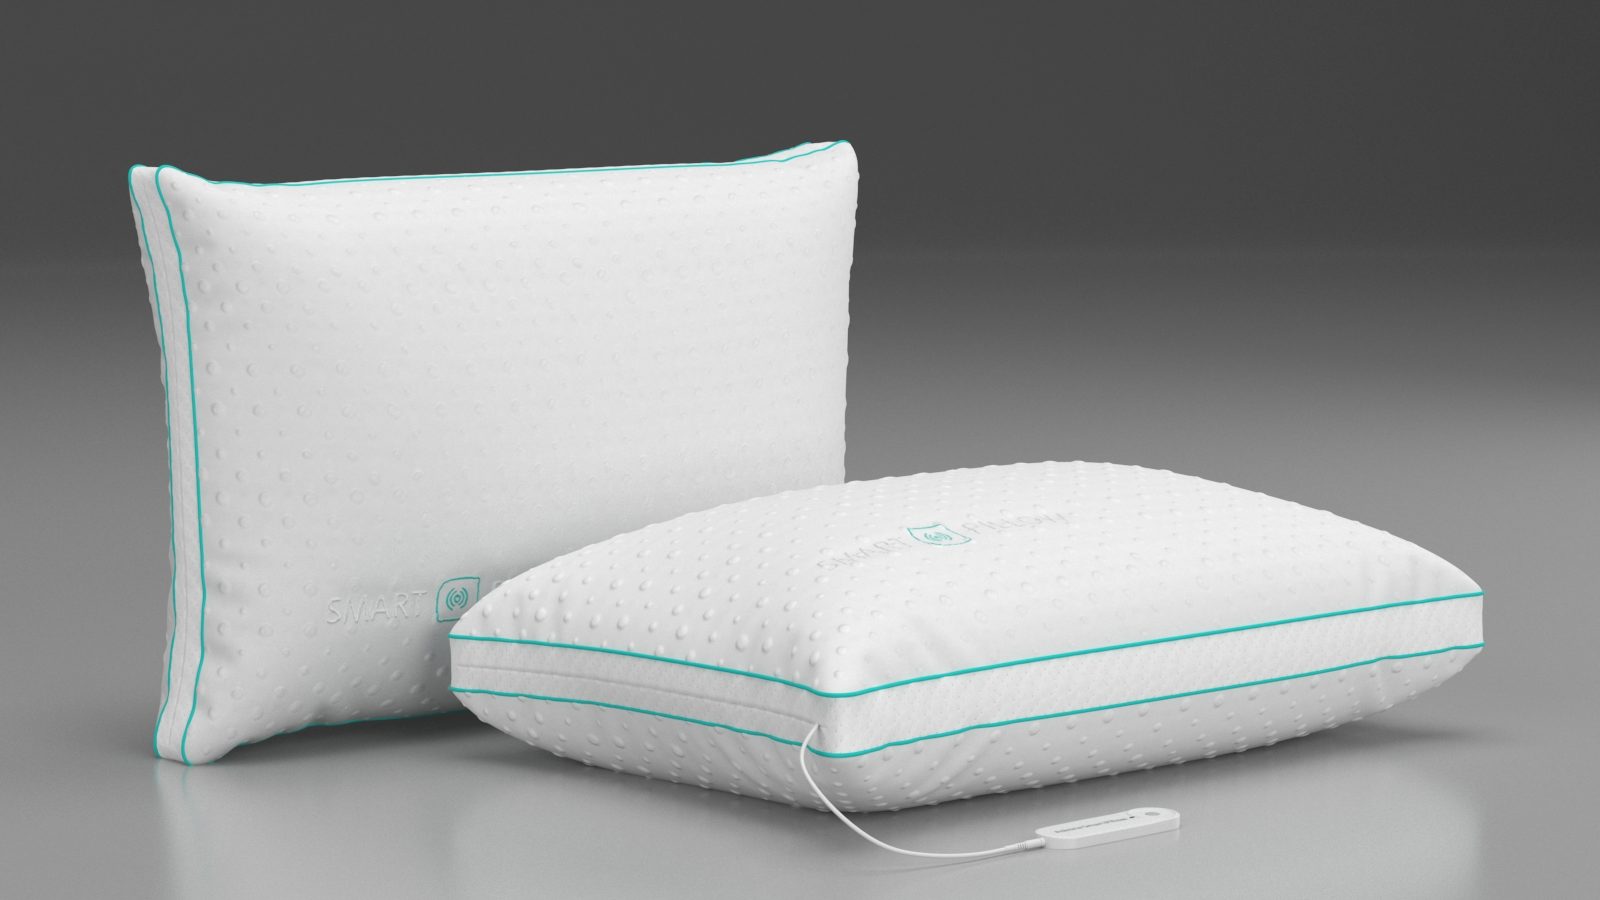 Askona Smart Pillow 2.0